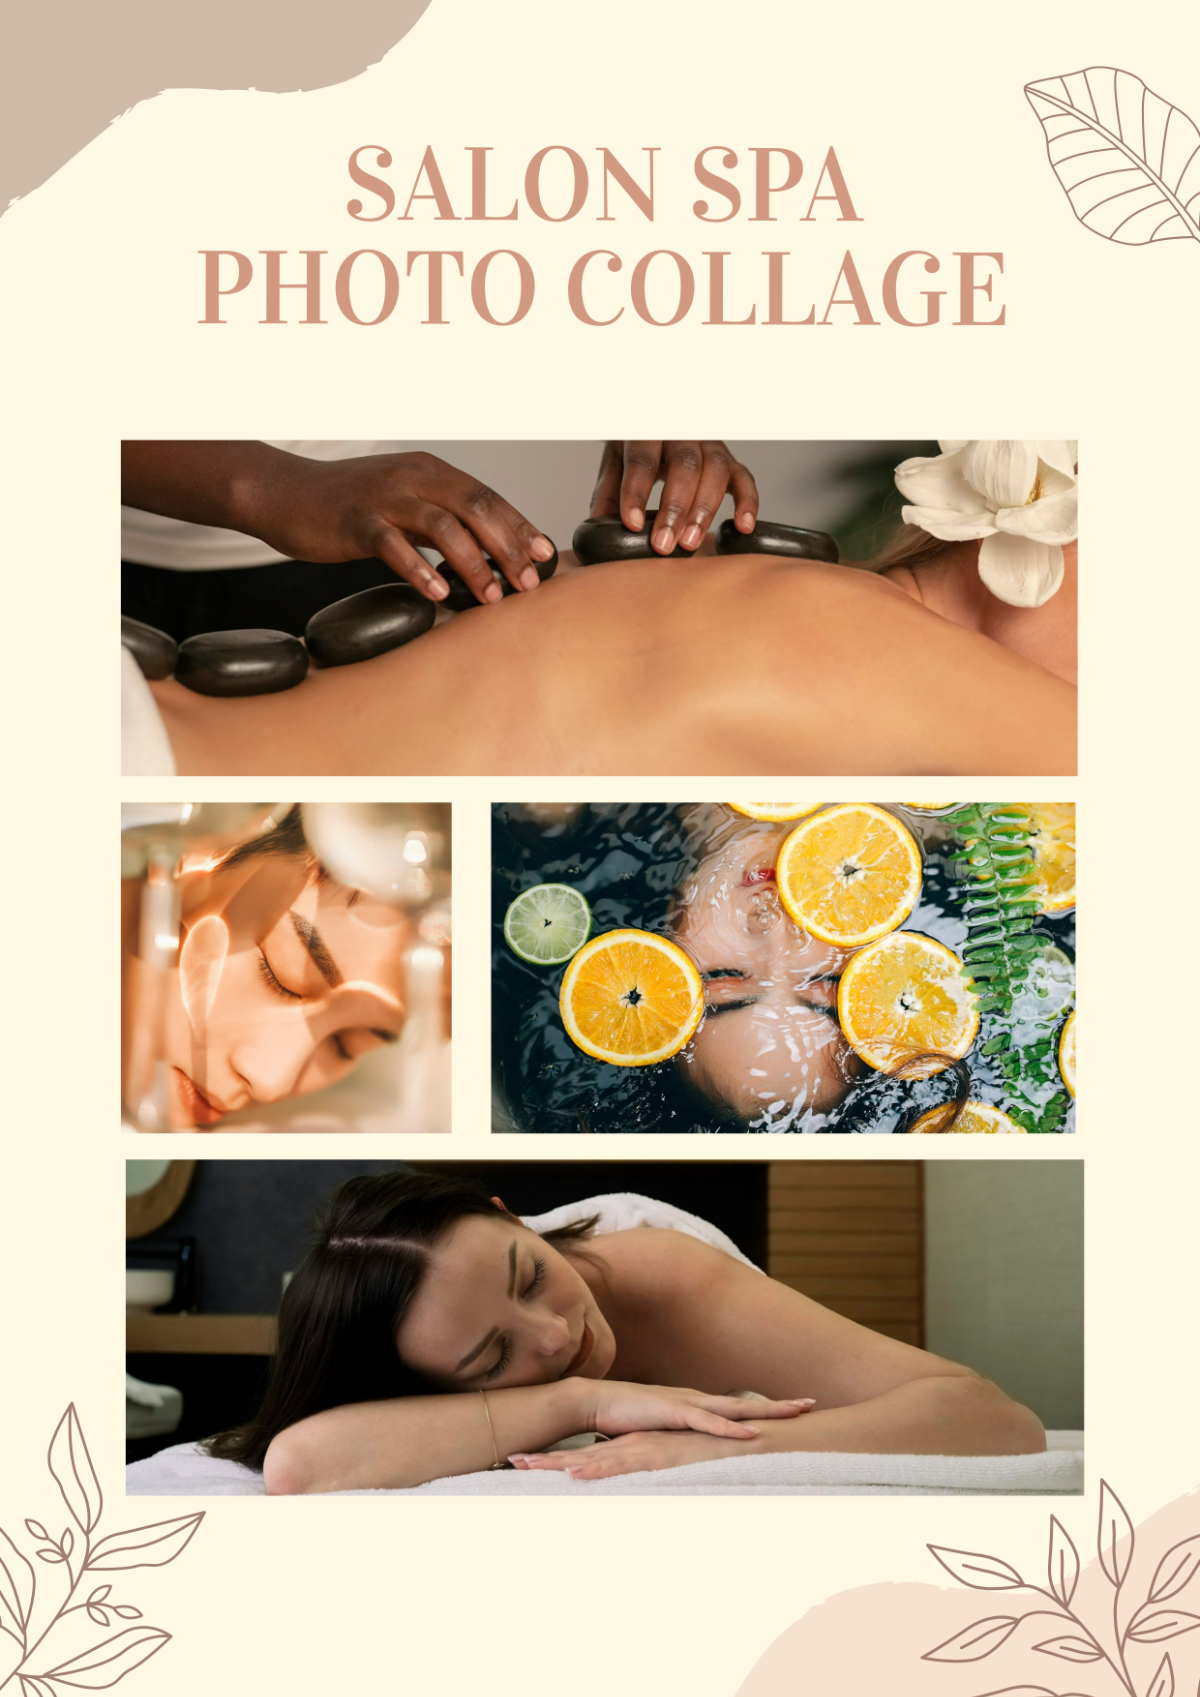 Salon Spa Photo Collage Template